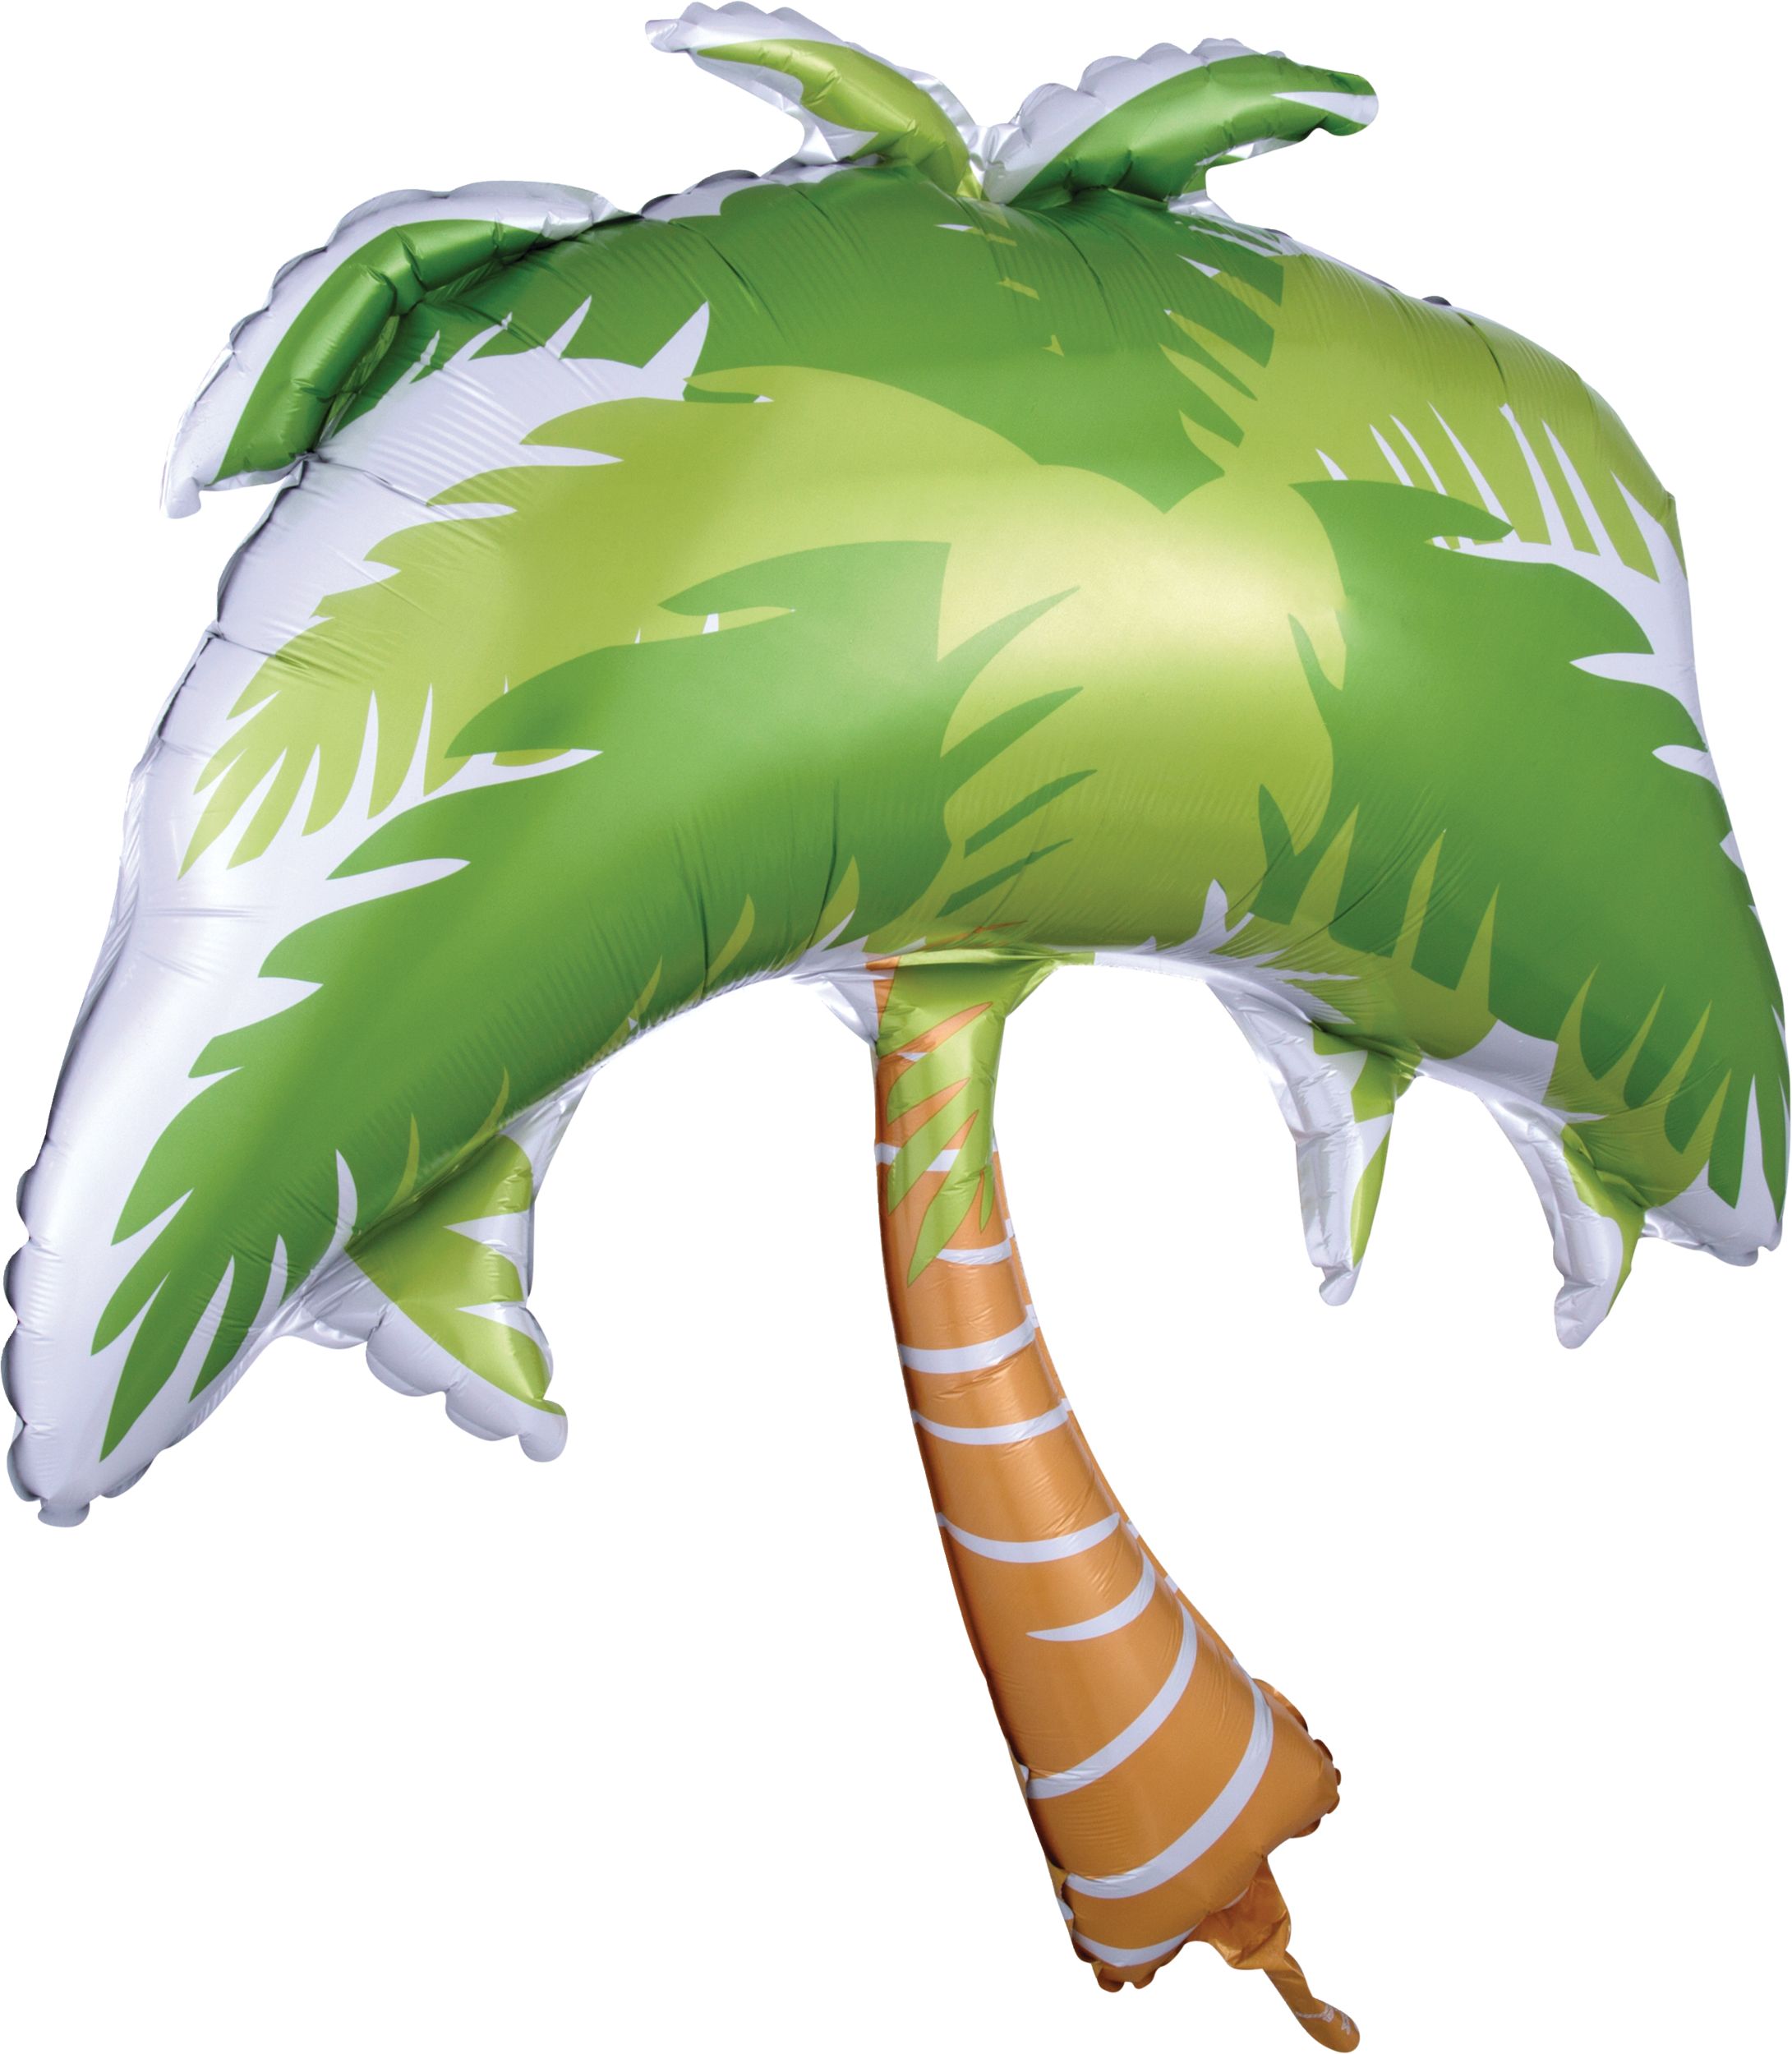 Ballon géant en aluminium palmier pour fête d'été/Luau, gonflage à